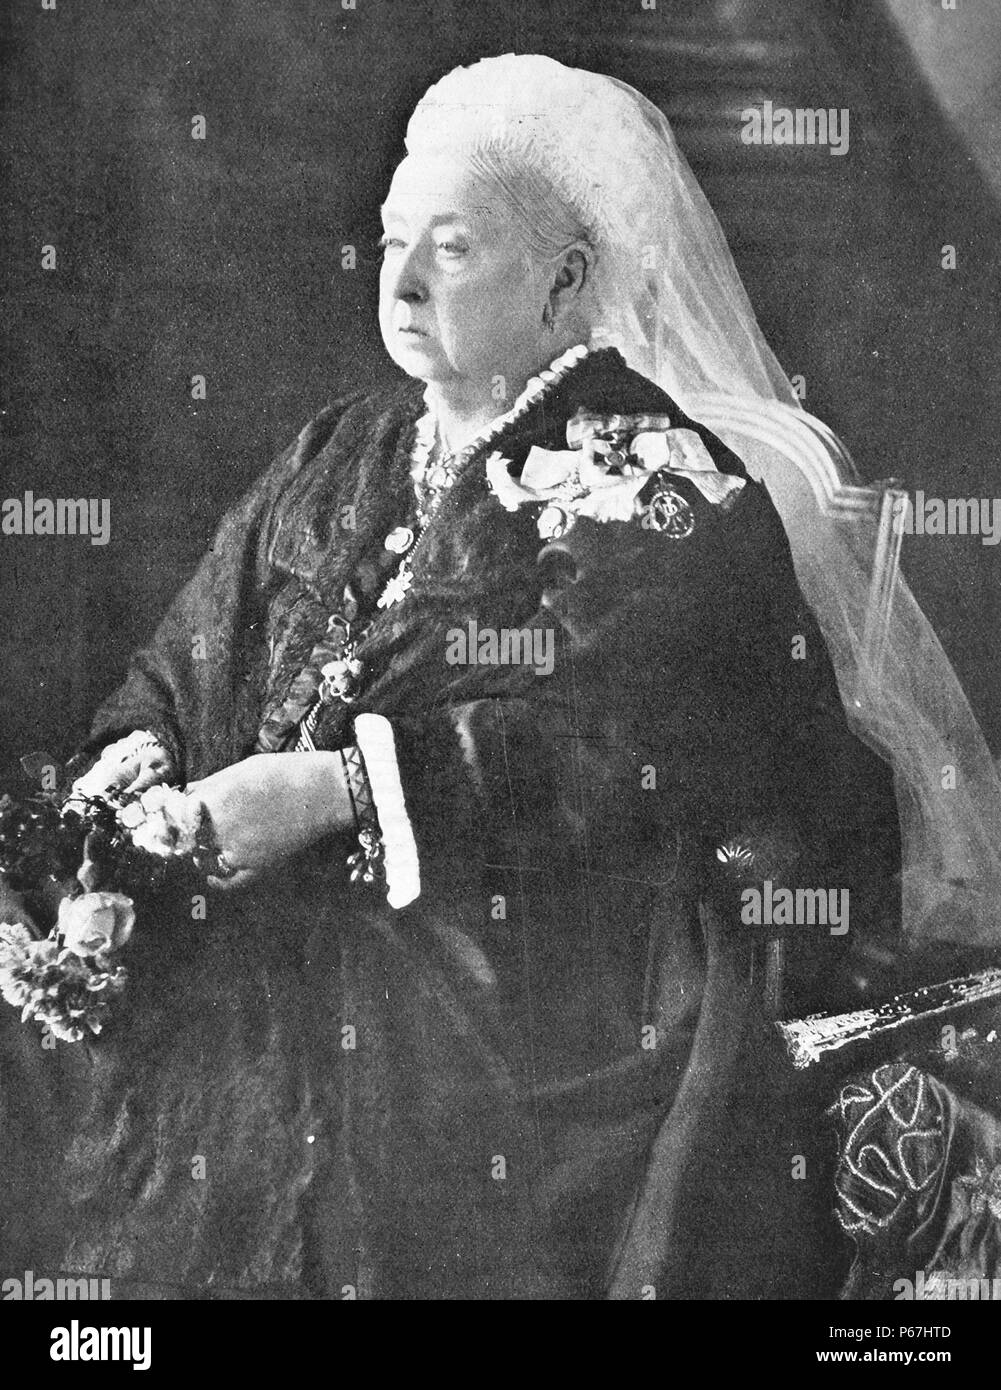 La reine Victoria de Grande-Bretagne 1899. Victoria (Alexandrina Victoria ; 24 mai 1819 - 22 janvier 1901) a été le monarque du Royaume-Uni de Grande-Bretagne et d'Irlande de 20 juin 1837 jusqu'à sa mort. À partir du 1er mai 1876, elle a utilisé le titre supplémentaire de l'Impératrice de l'Inde Banque D'Images